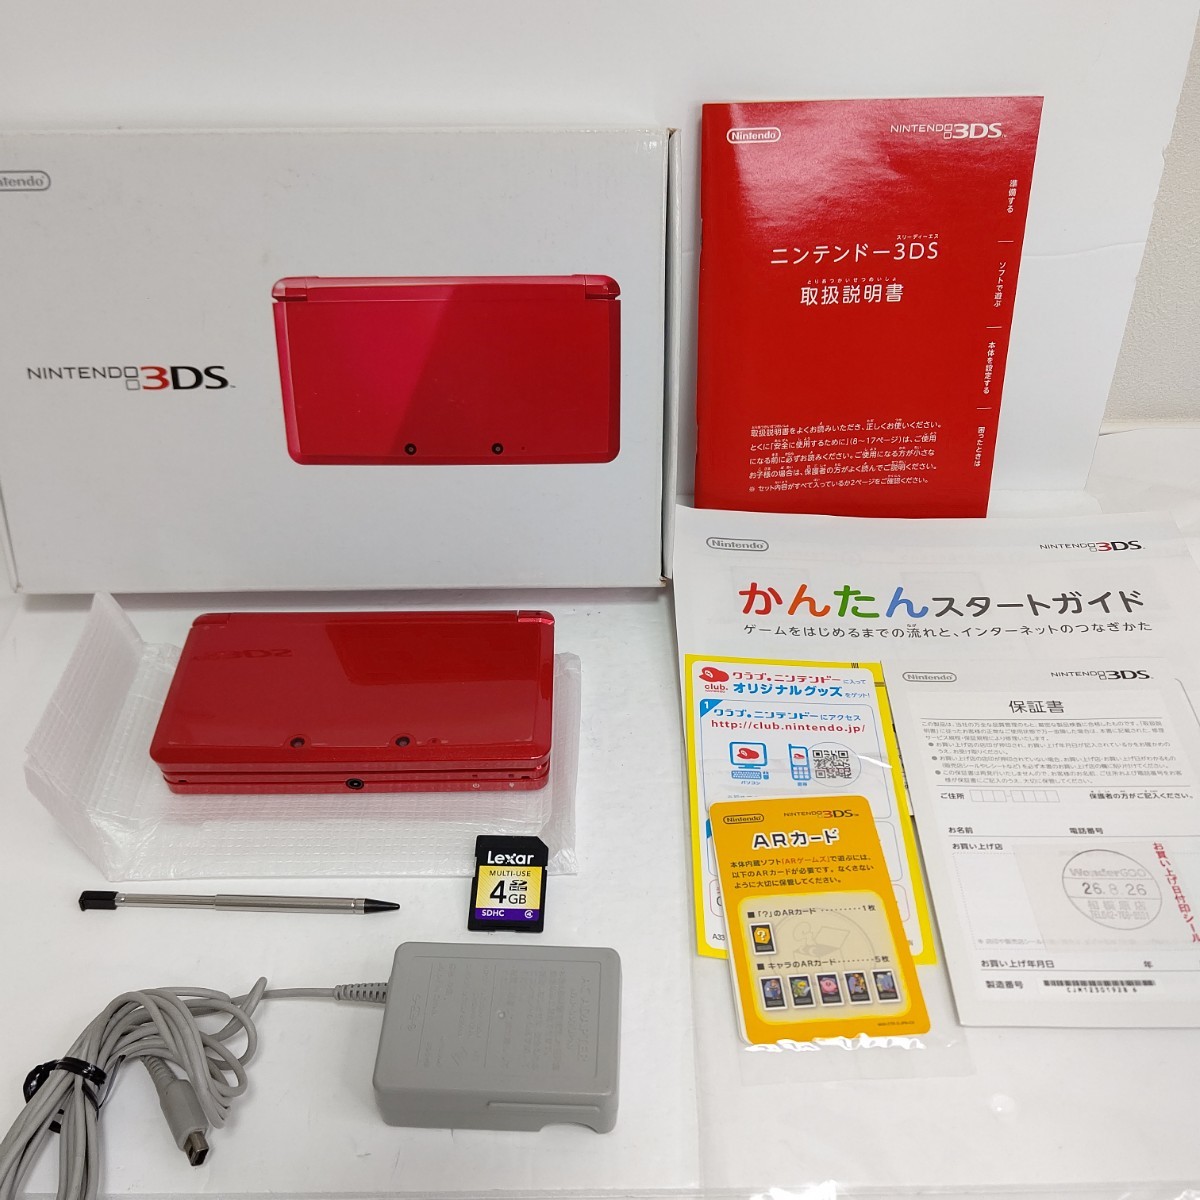 正式的 Nintendo ニンテンドー3DS メタリックレッド 極美品 任天堂